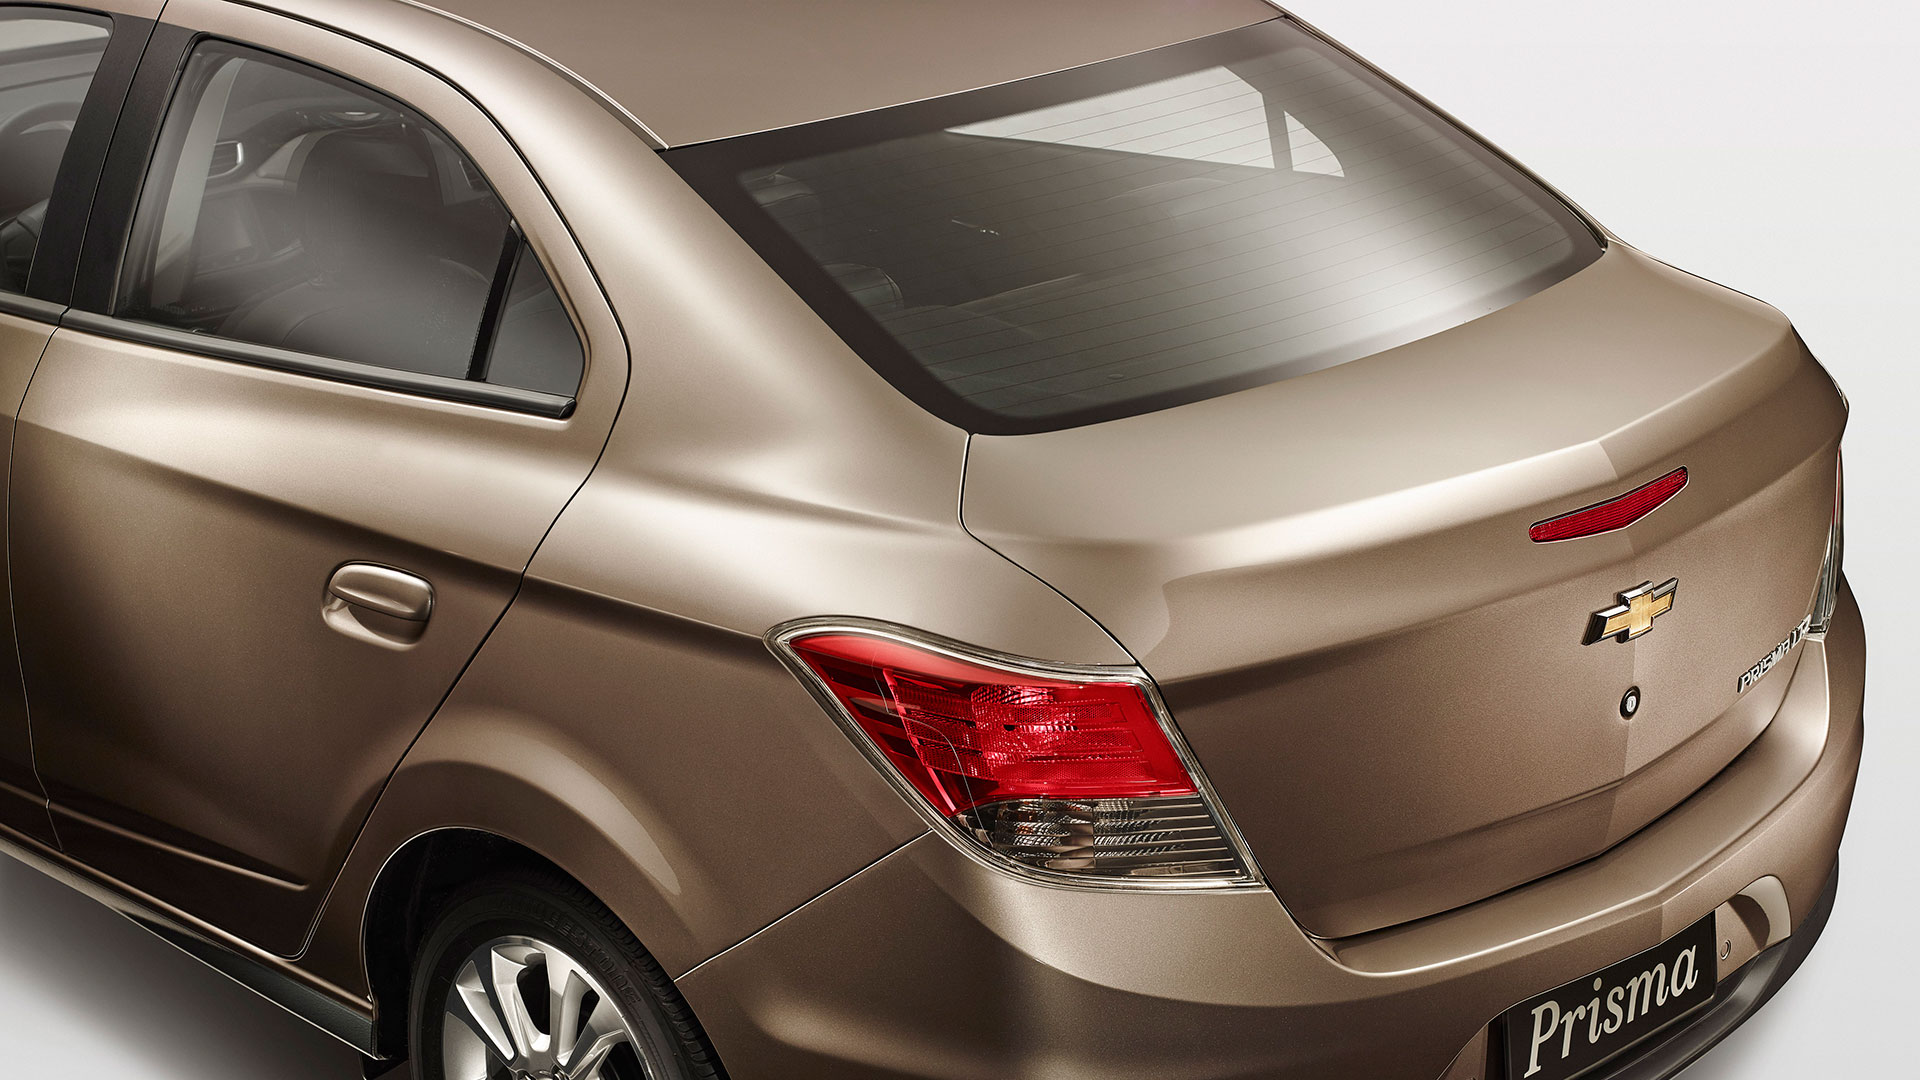 Chevrolet Prisma 1.4 Econo.Flex specs, dimensions